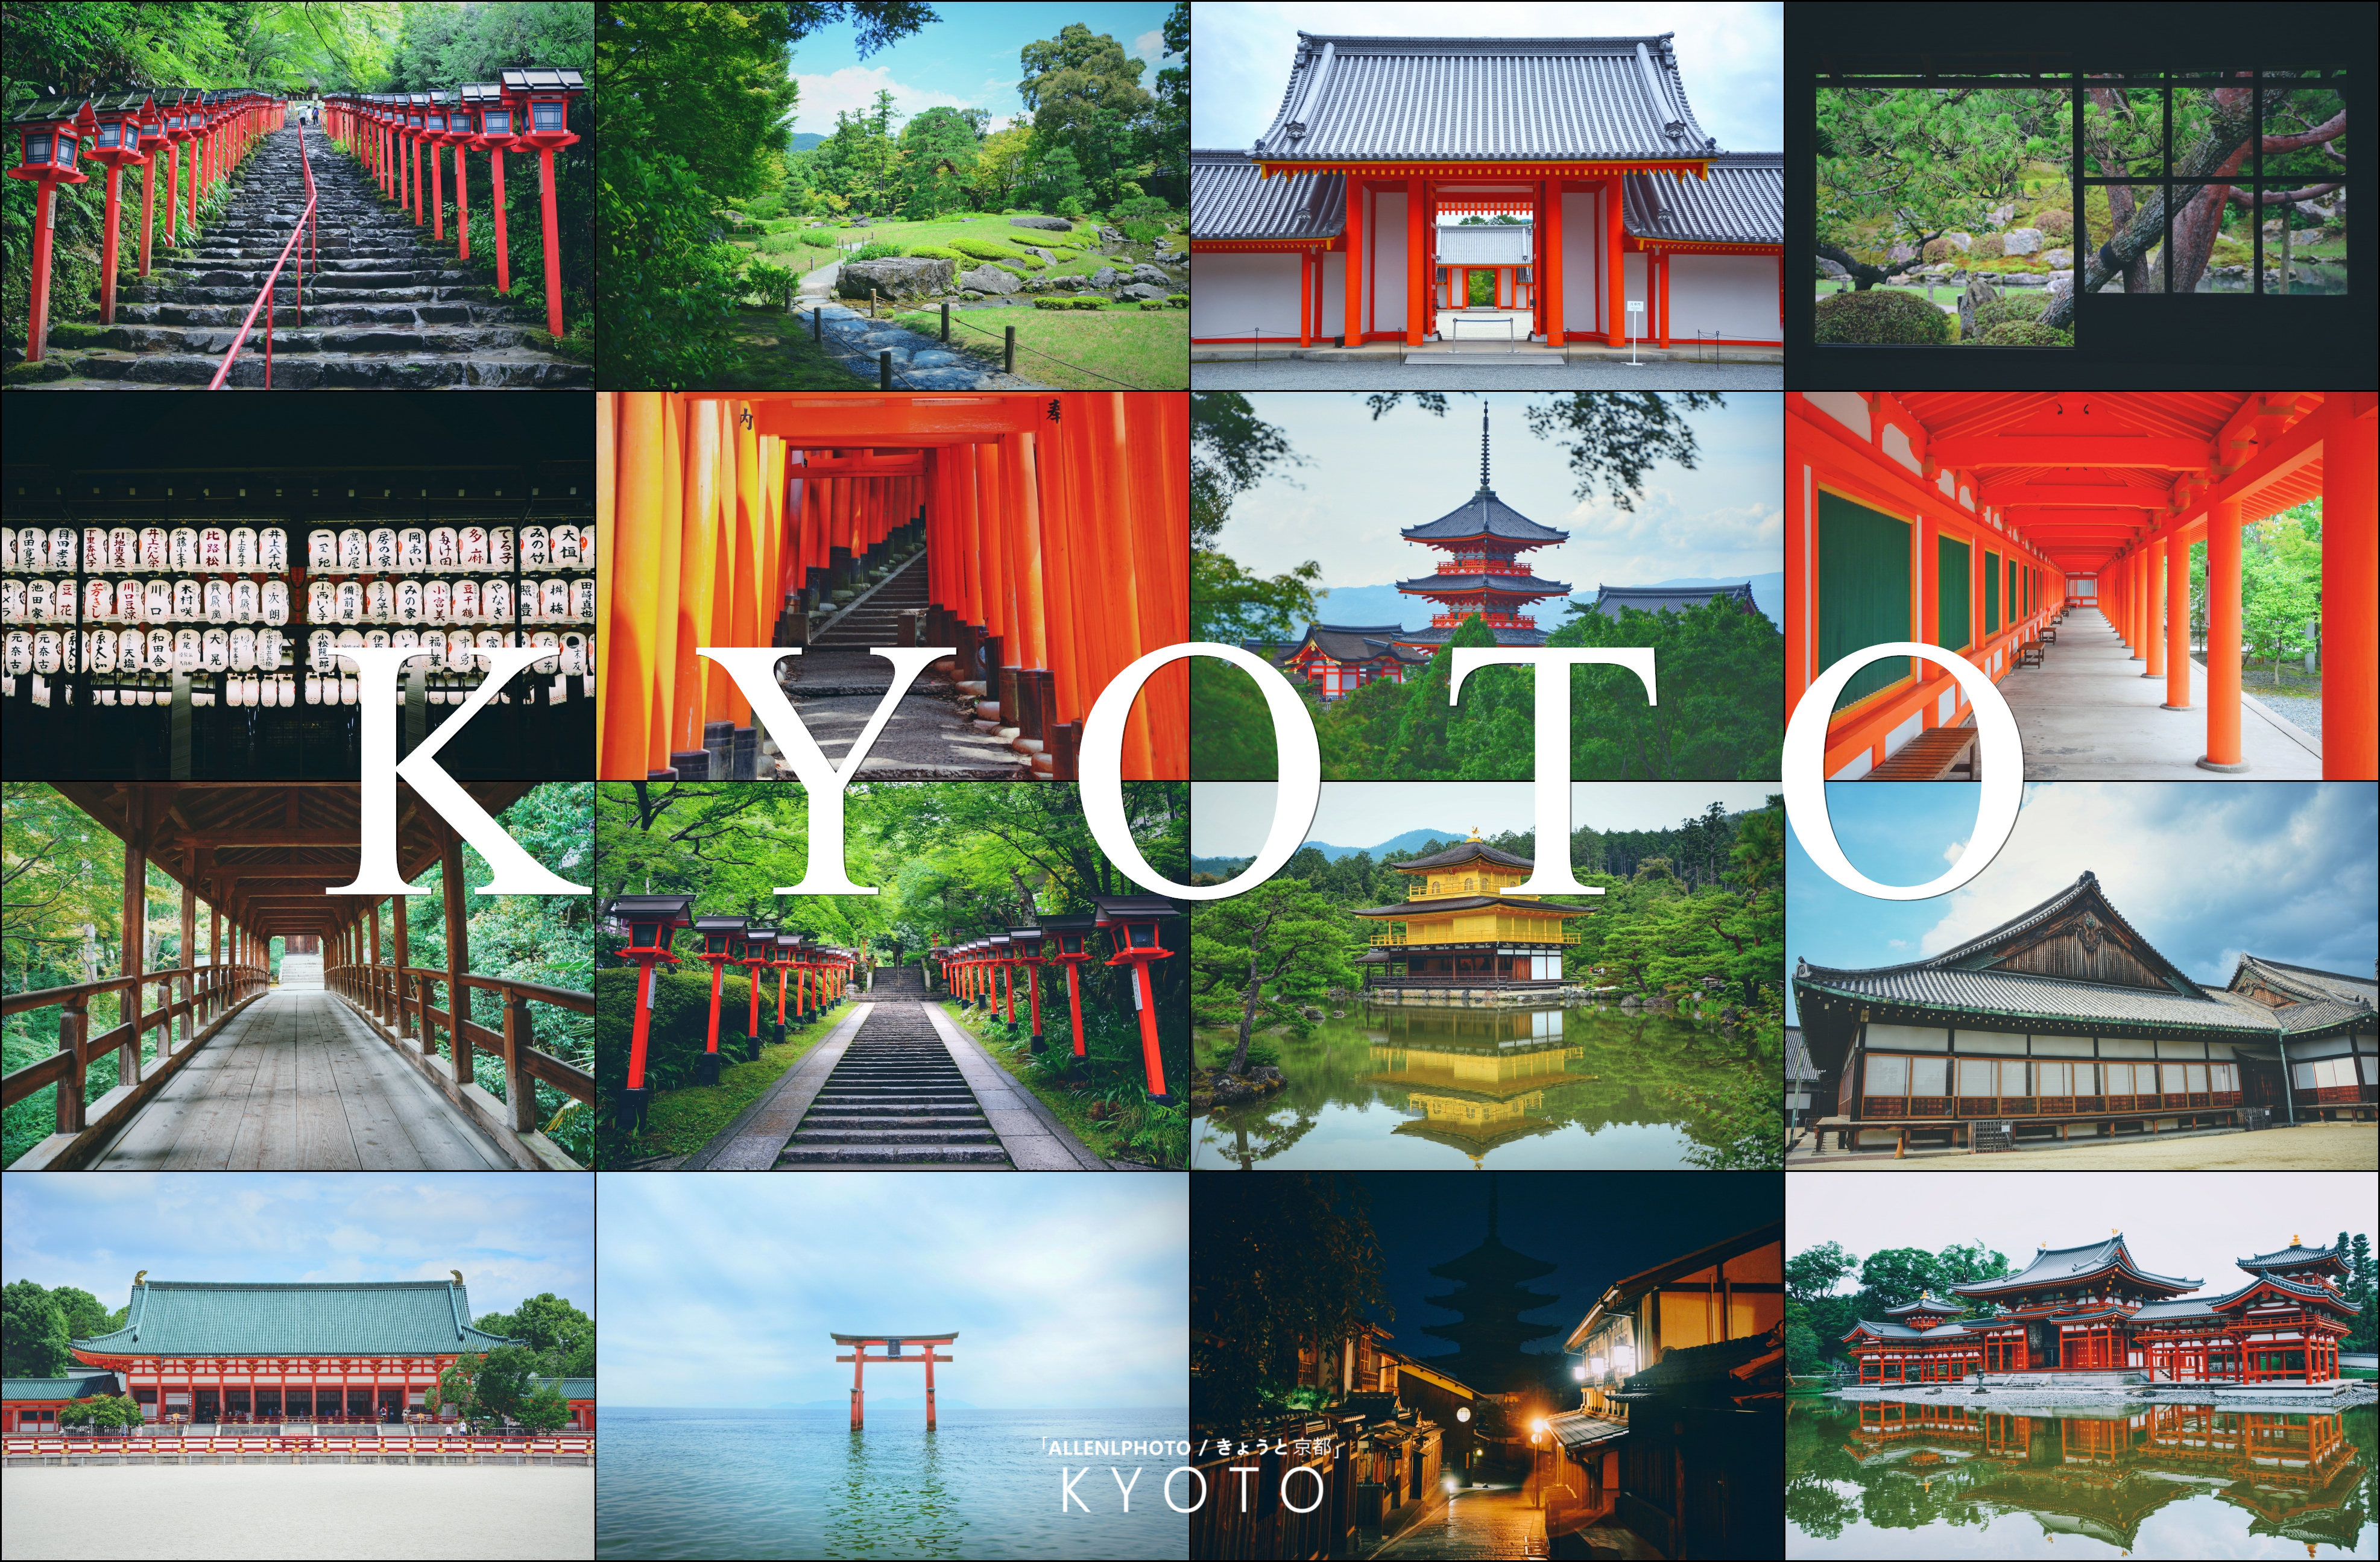 京都物语 精致优雅的风情 更是彼此一期一会的约定 绝景 美食 体验全攻略 日本 旅行摄影 论坛 穷游网